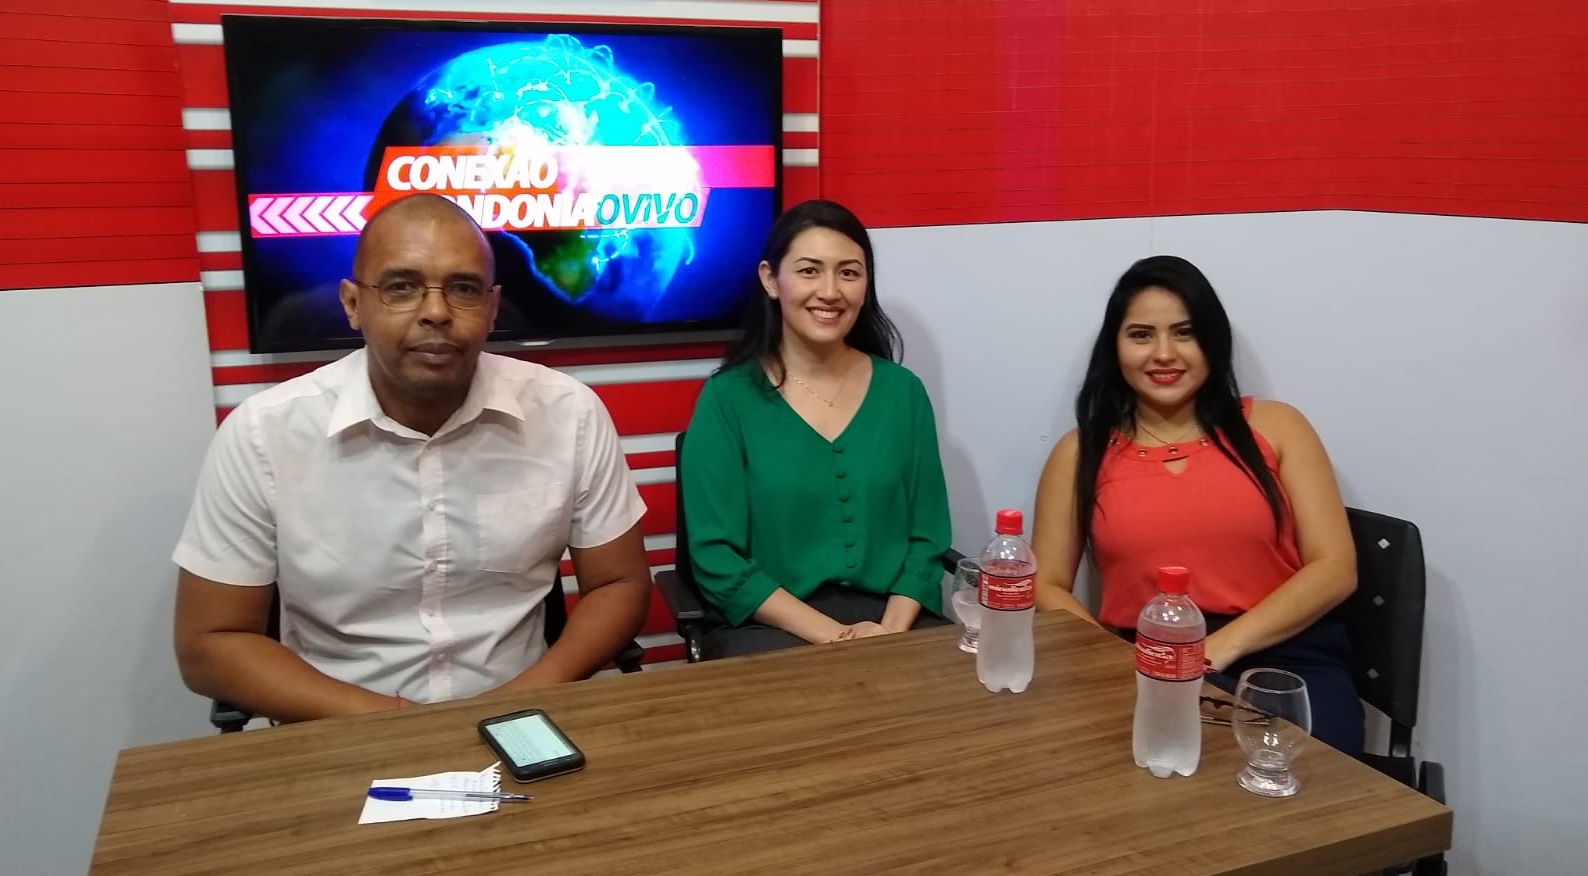 CONEXÃO RONDONIAOVIVO: Entrevista com a Dr. Pediatra, Melina Pedroso do Hospital Samar e Yasmine Melo representante do Grupo Ameron